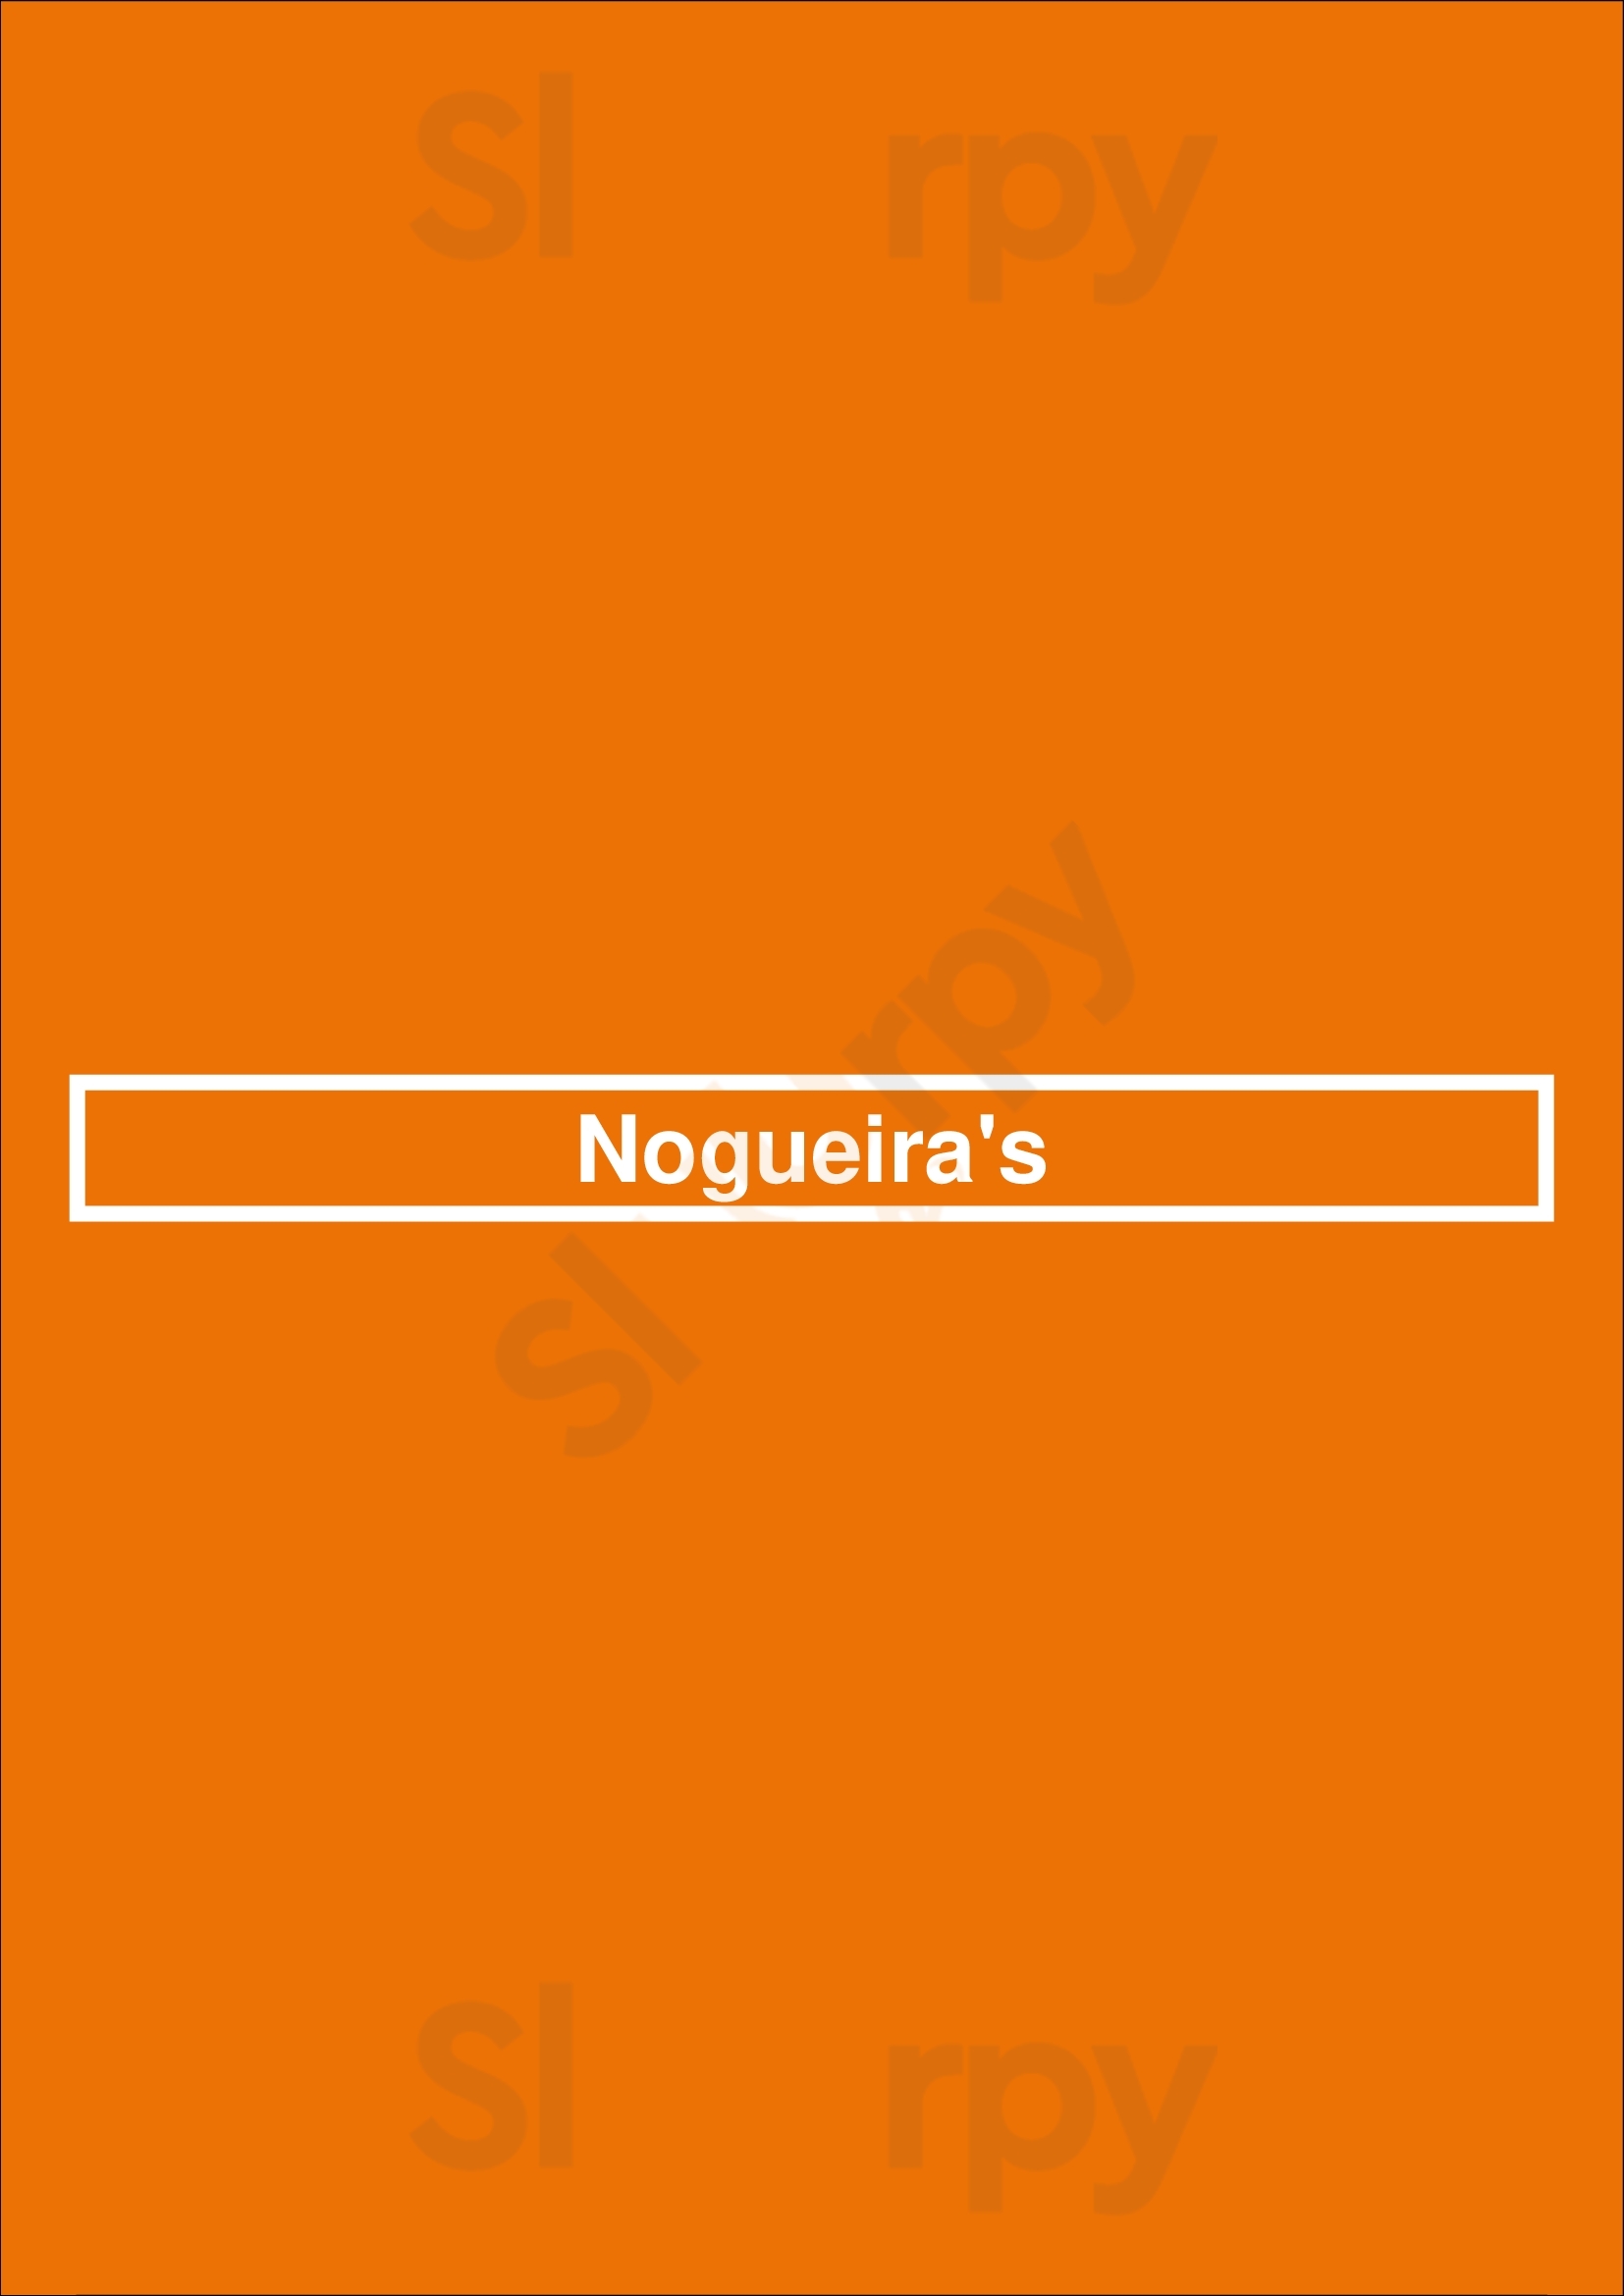 Nogueira's Lisboa Menu - 1